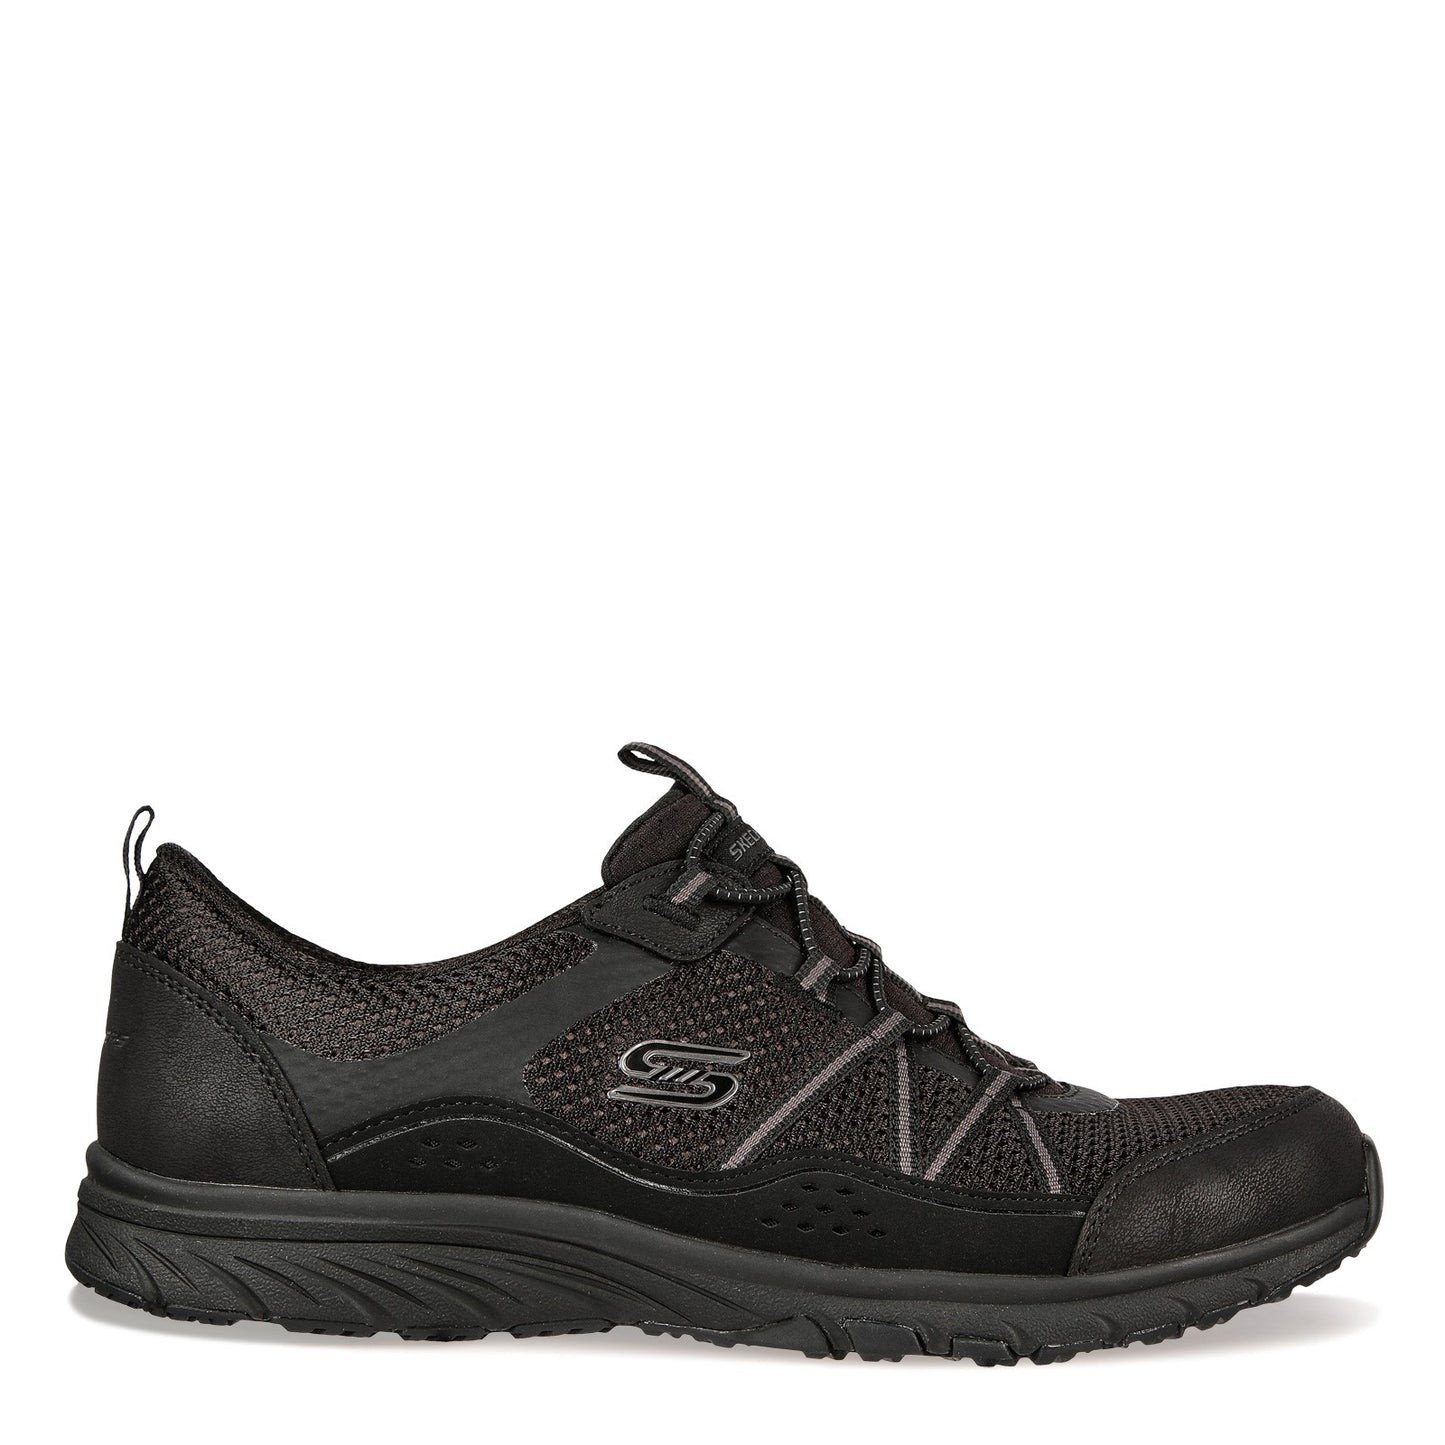 Peltz Shoes  Women's Skechers Gratis Sport Sneaker - Wide Width BLACK 104282W-BBK